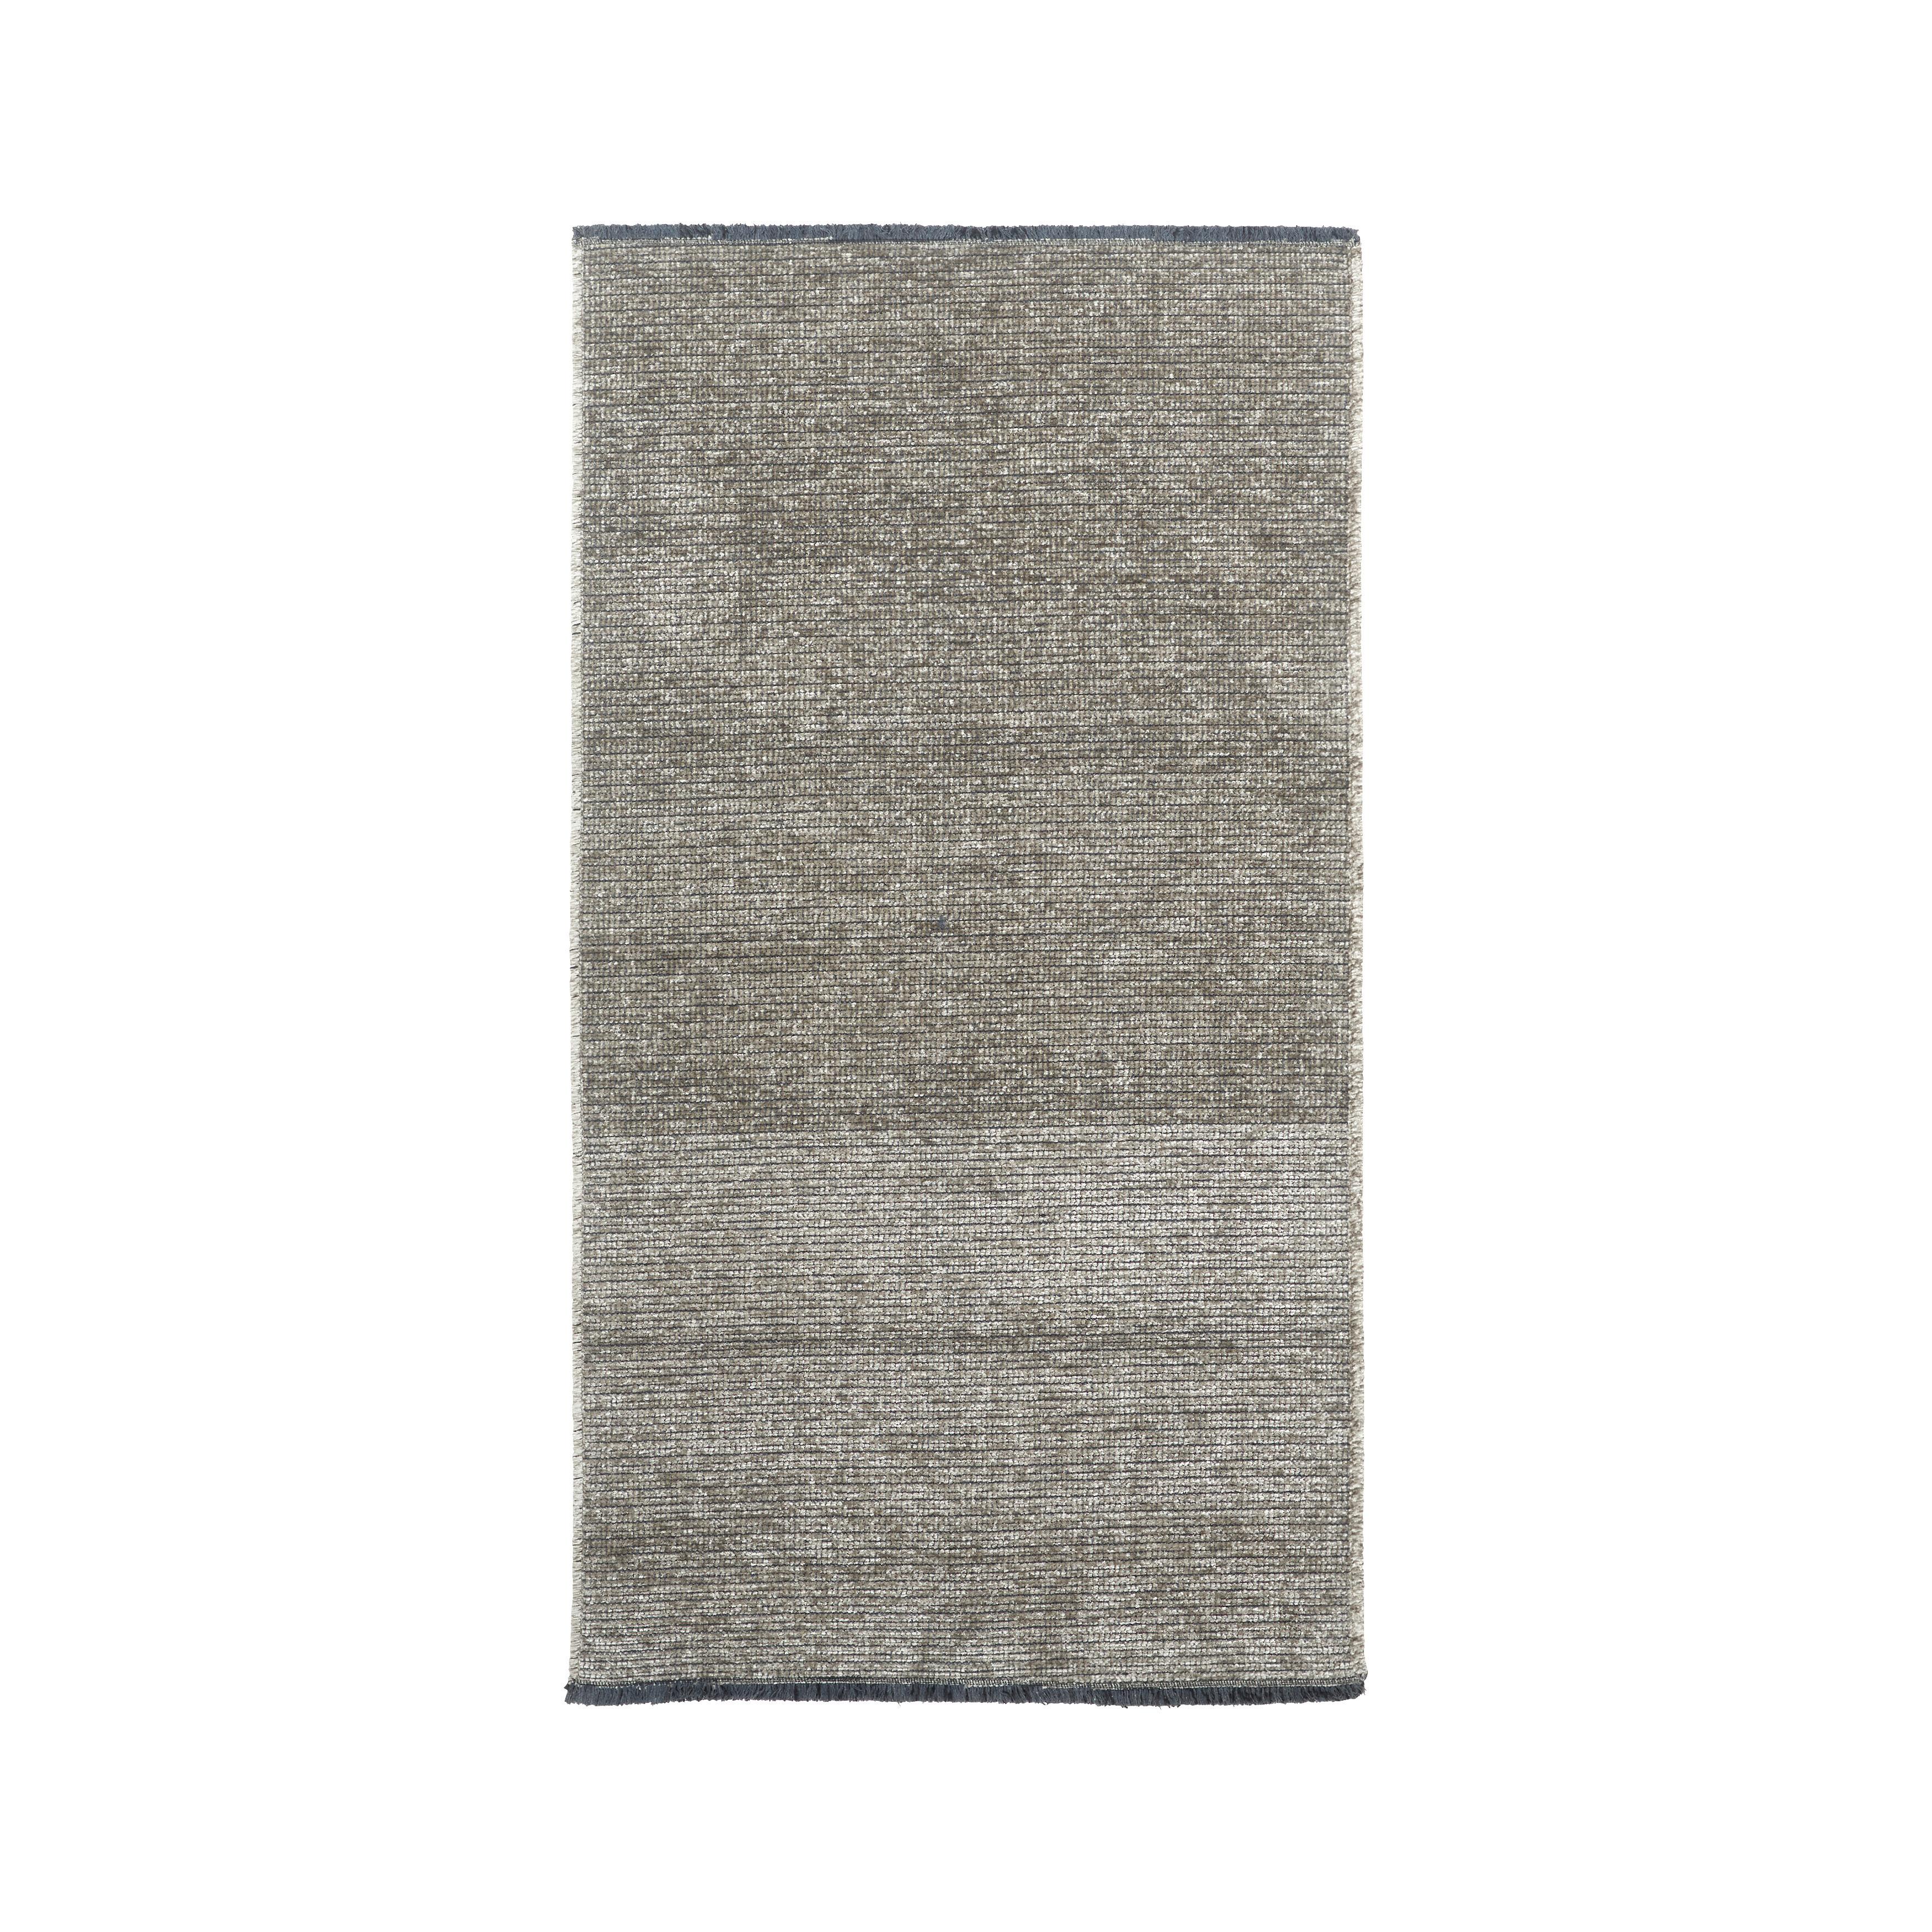 Szőtt Szőnyeg Silke 120/170 - Antracit, romantikus/Landhaus, Textil (120/170cm) - Modern Living